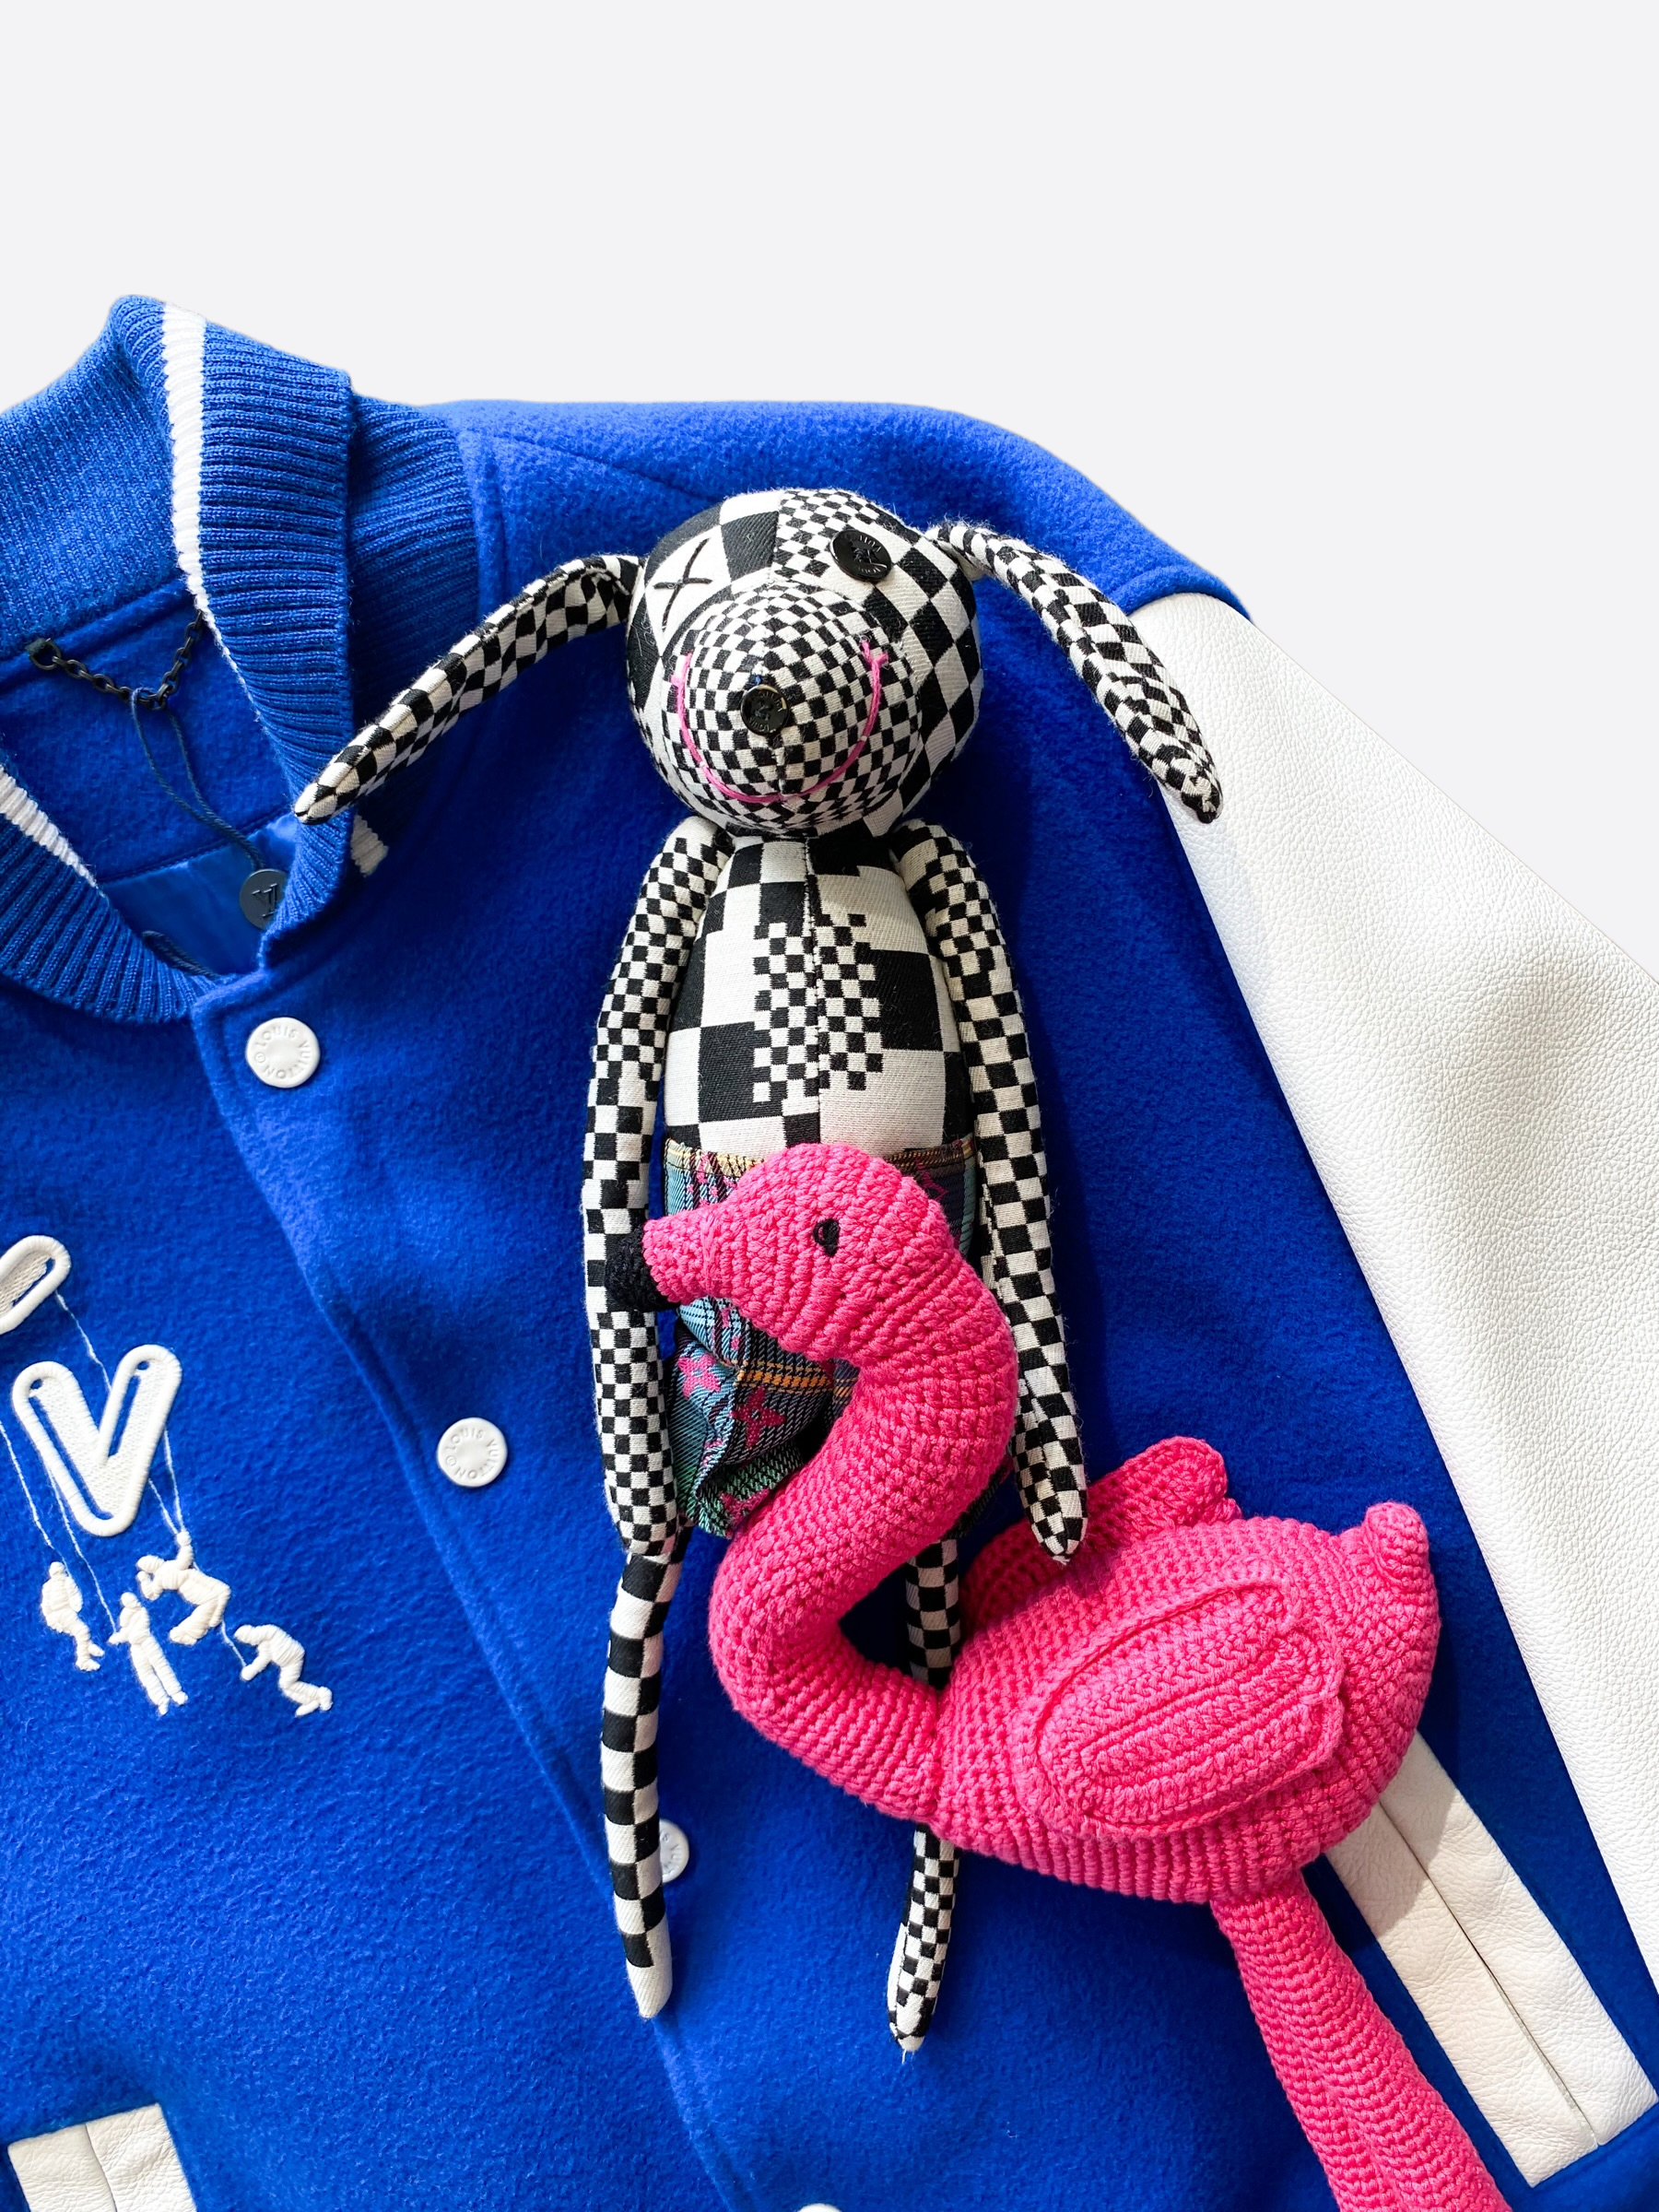 Louis Vuitton, Jackets & Coats, Louis Vuitton Puppet Baseball Jacket